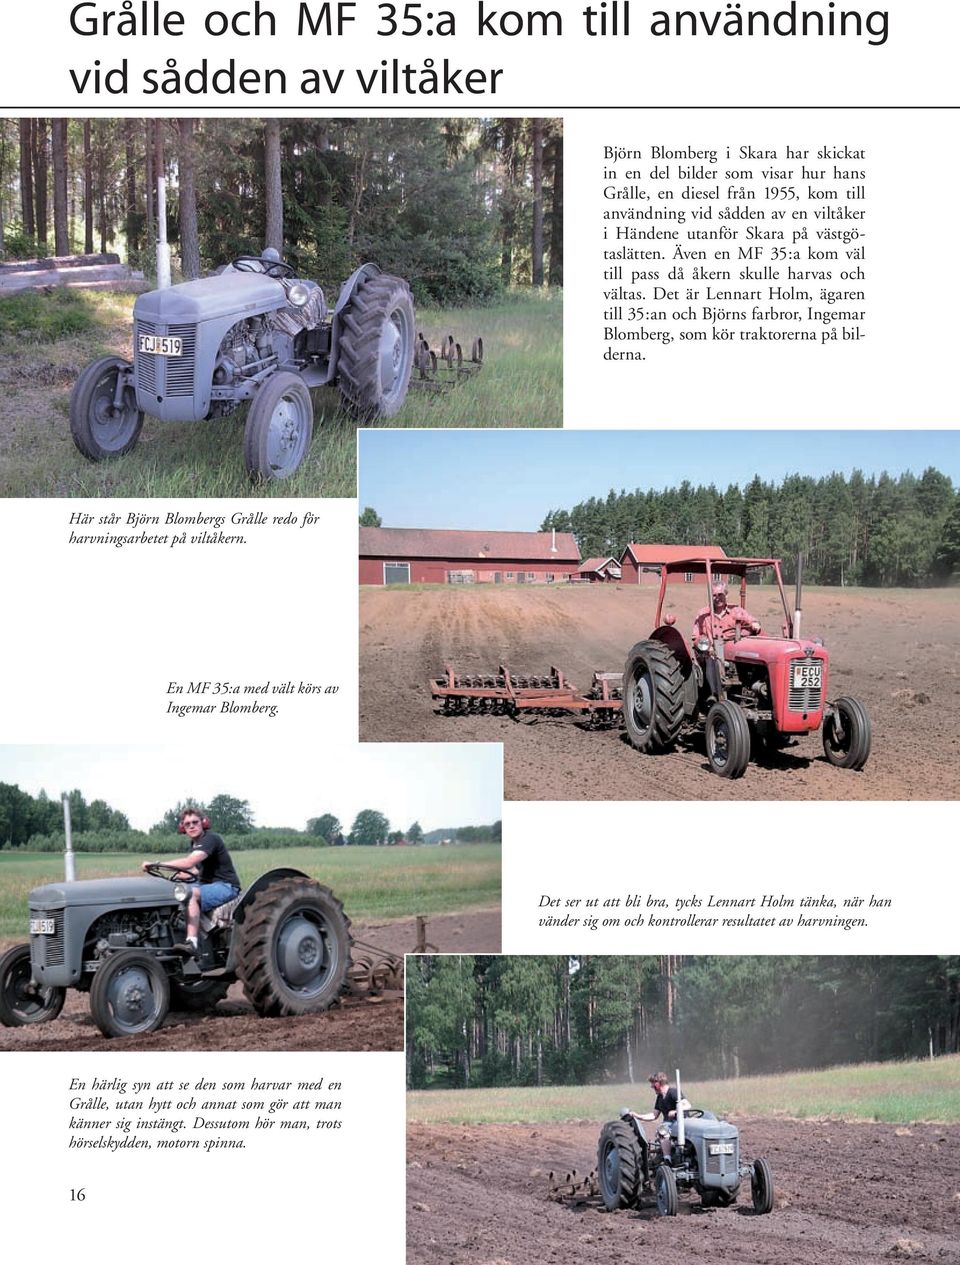 Det är Lennart Holm, ägaren till 35:an och Björns farbror, Ingemar Blomberg, som kör traktorerna på bilderna. Här står Björn Blombergs Grålle redo för harvningsarbetet på viltåkern.